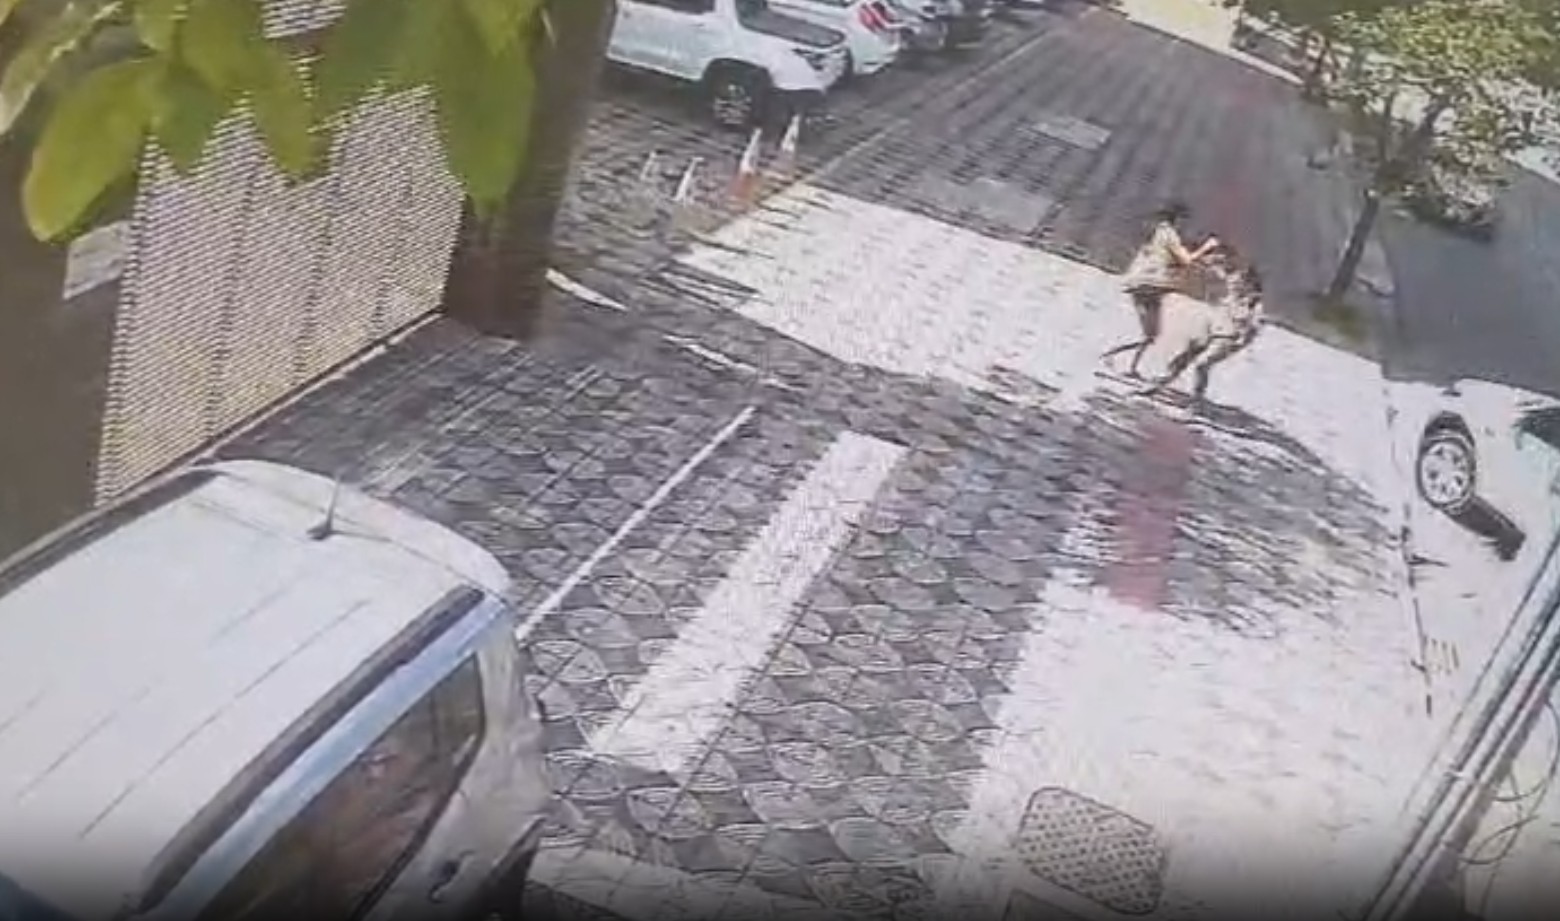 Vídeos flagram mulher agredindo pedestres em ruas de BH